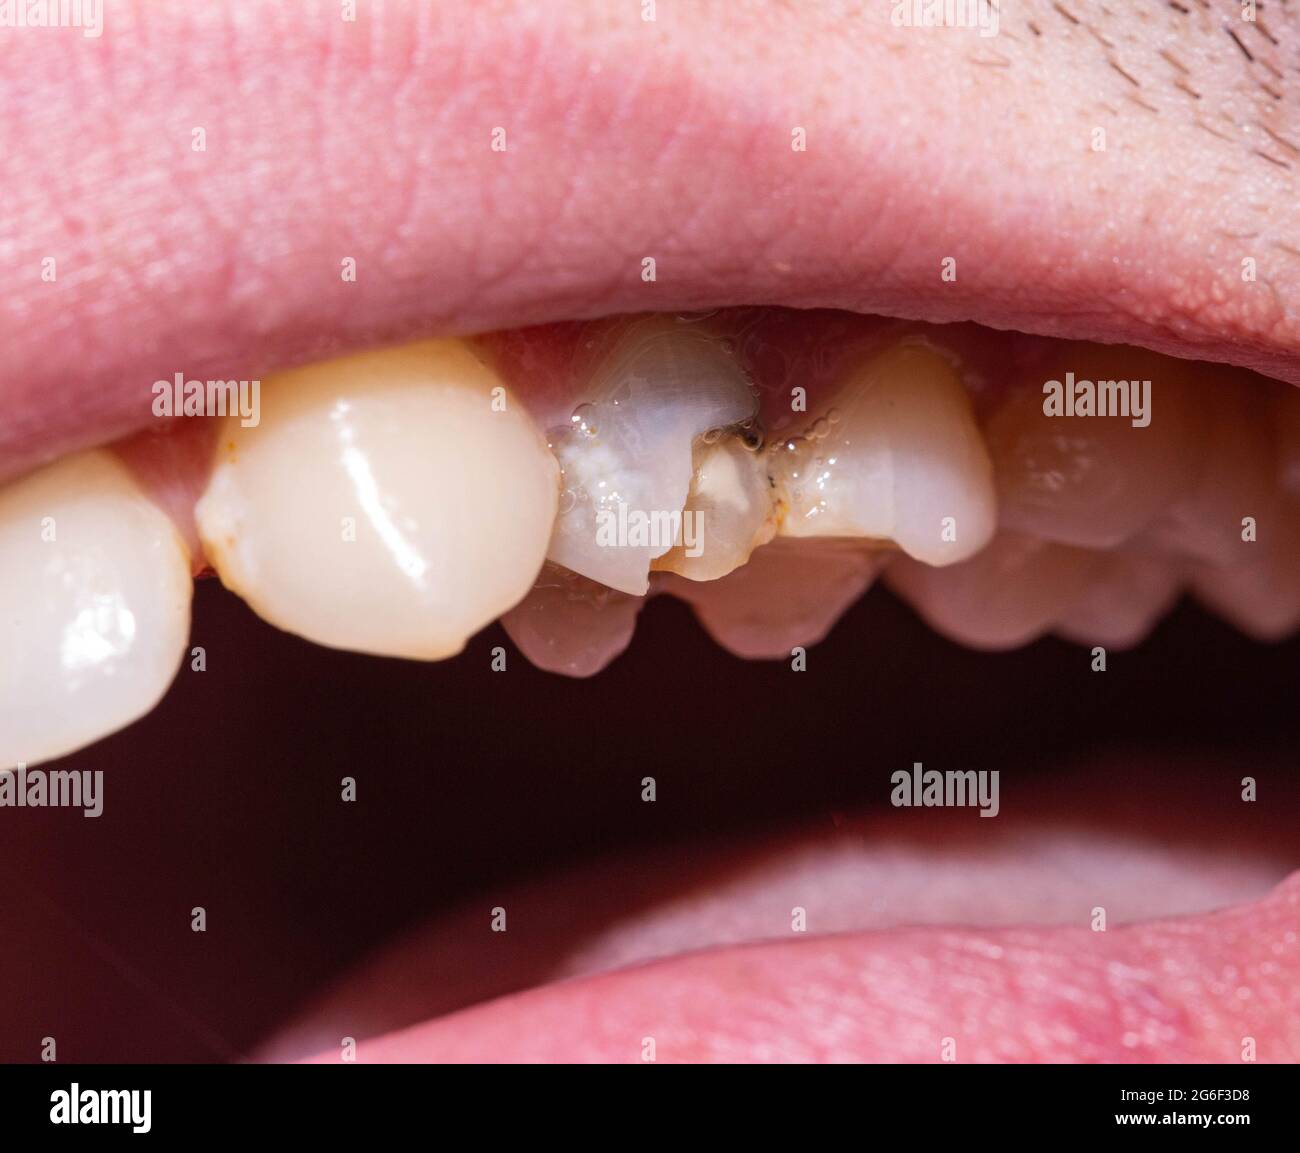 Un dente morto nero in cui un pezzo di smalto del dente è scheggiato via,  una scheggiatura del dente. Il concetto di restauro dentale in odontoiatria  moderna, macro. Ortod Foto stock -